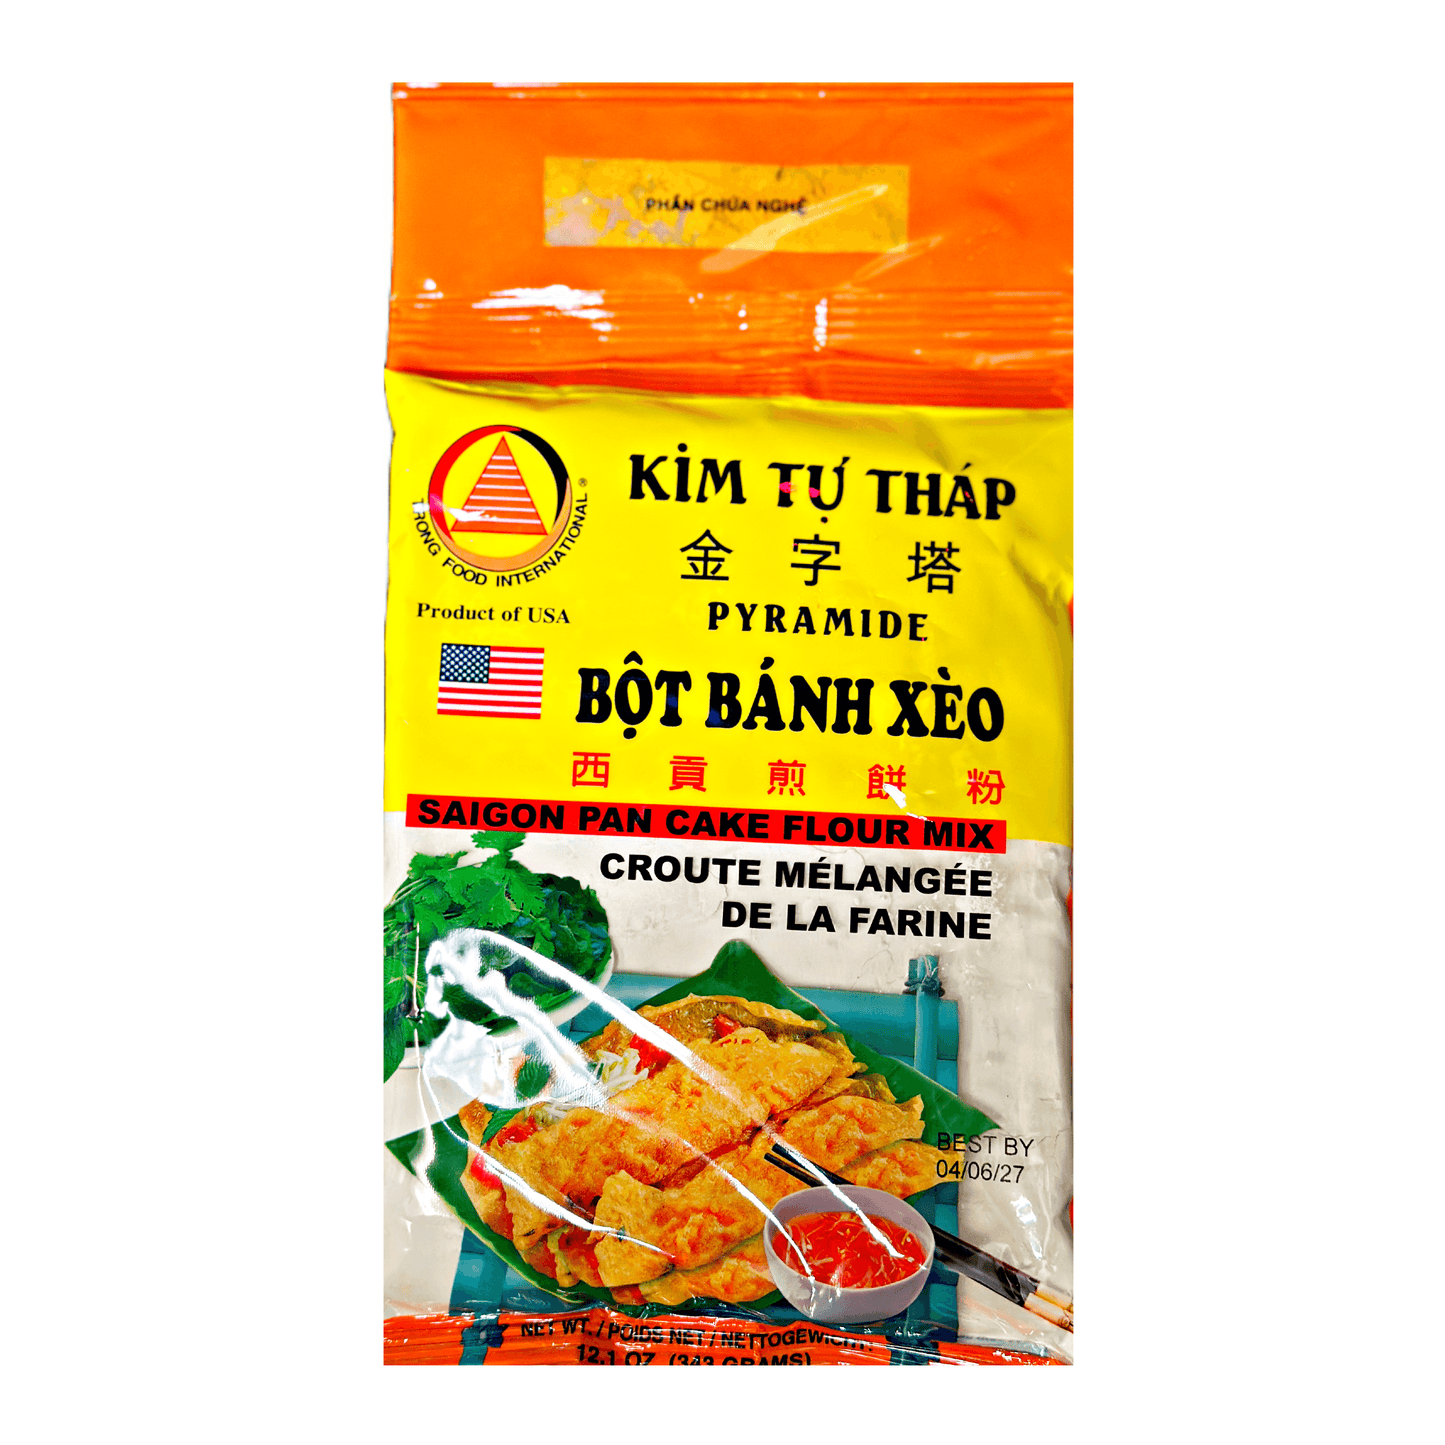 Kim Tu Thap Sai Gon Pan Cake “Banh Xeo” Flour Mix 343g - The Snacks Box - Asian Snacks Store - The Snacks Box - Korean Snack - Japanese Snack